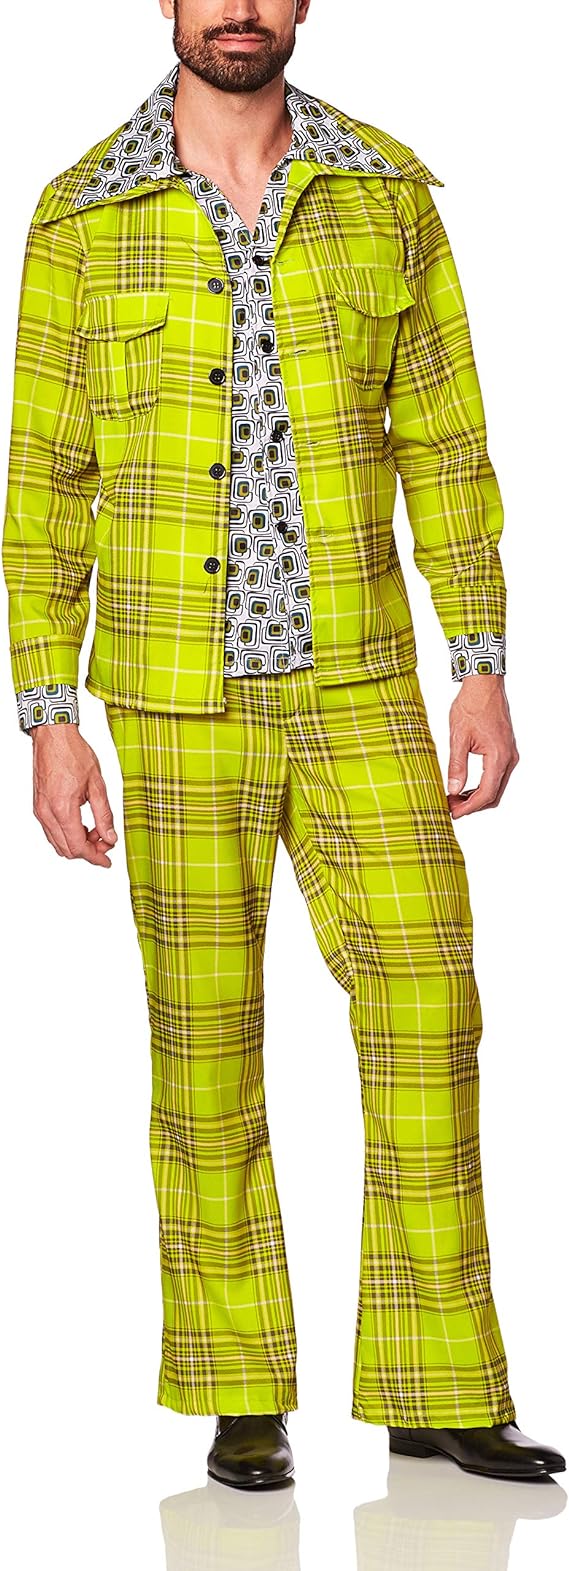 Plaid Leisure Suit - Adult Costume